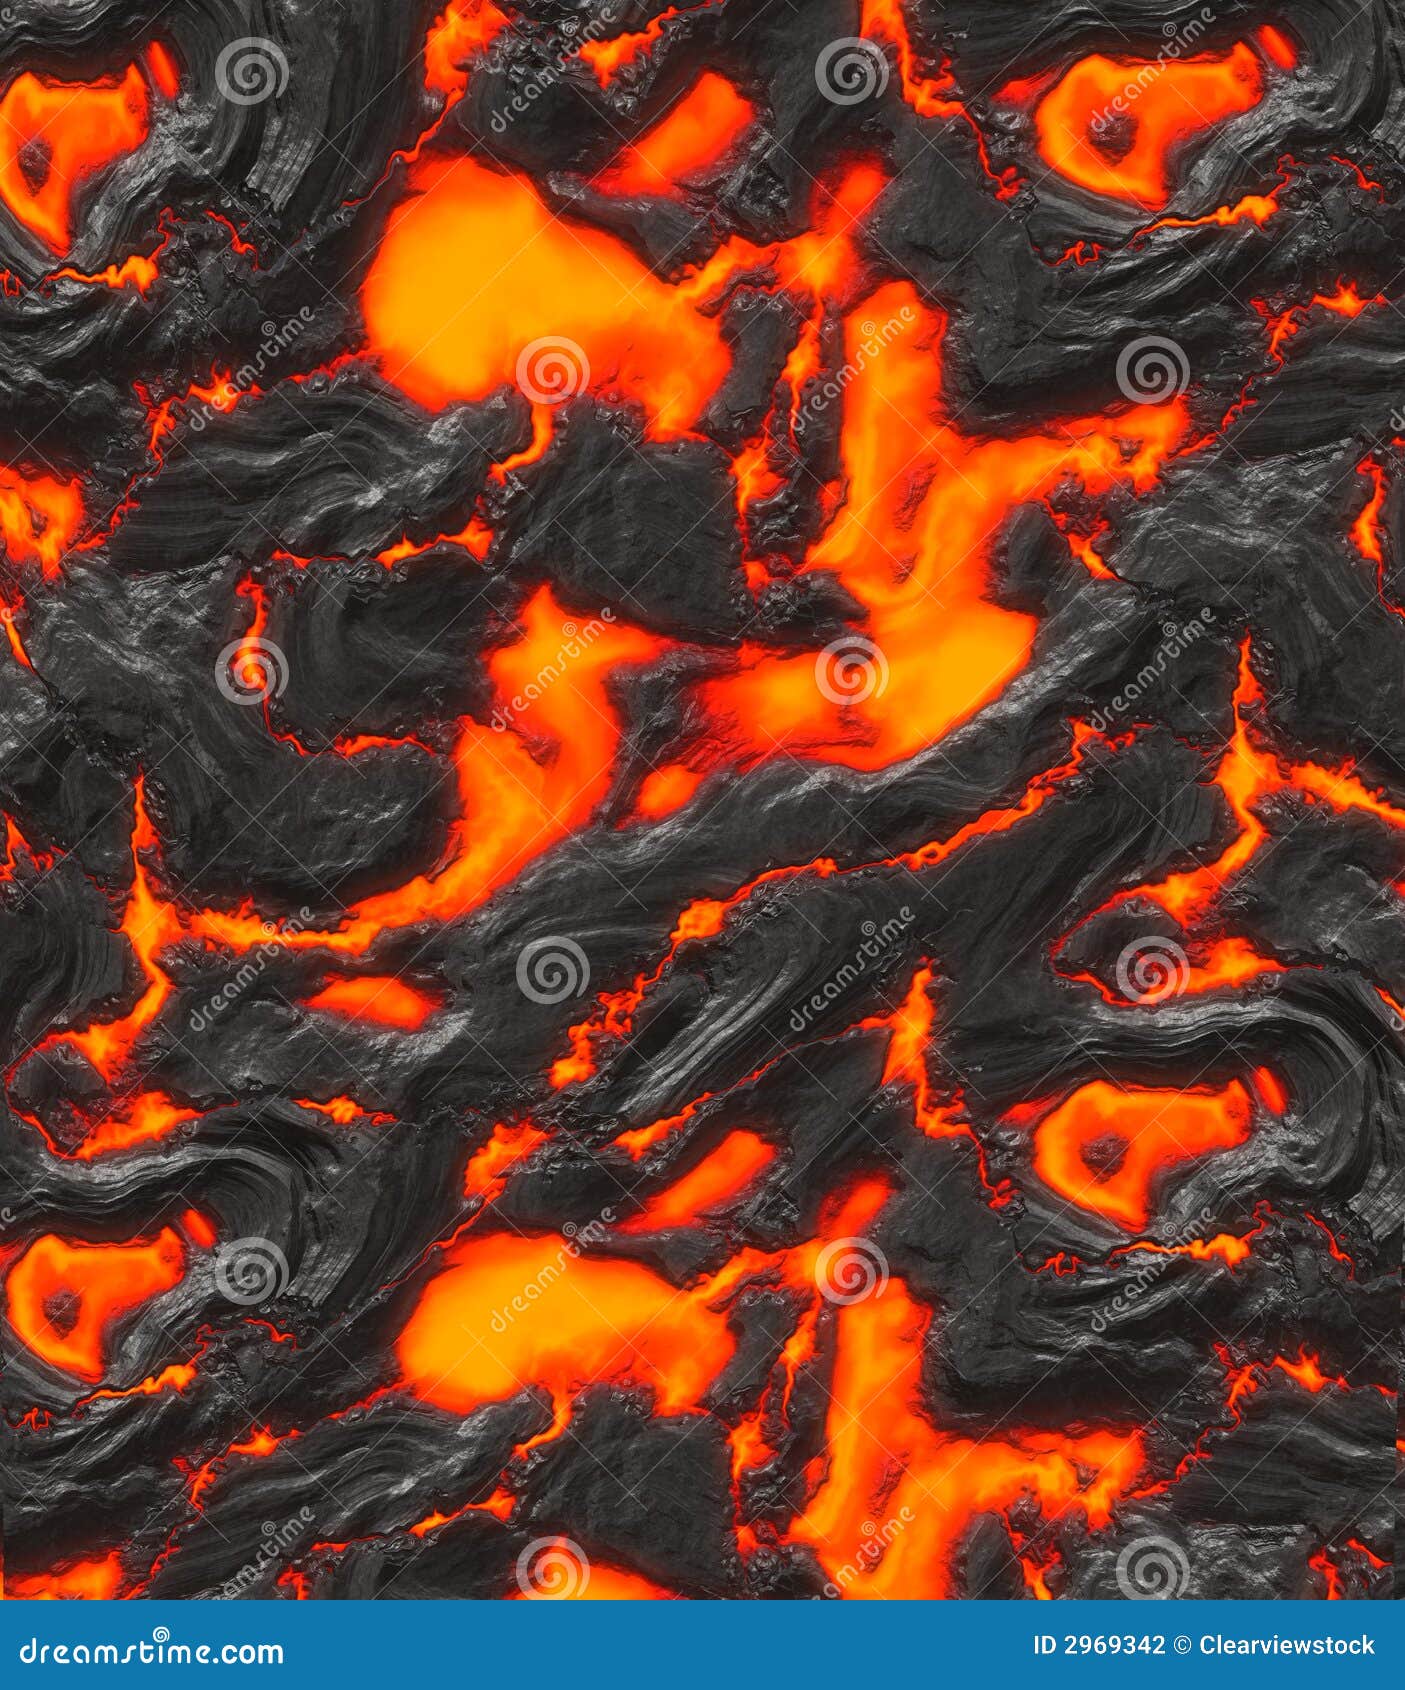 magma or molten lava